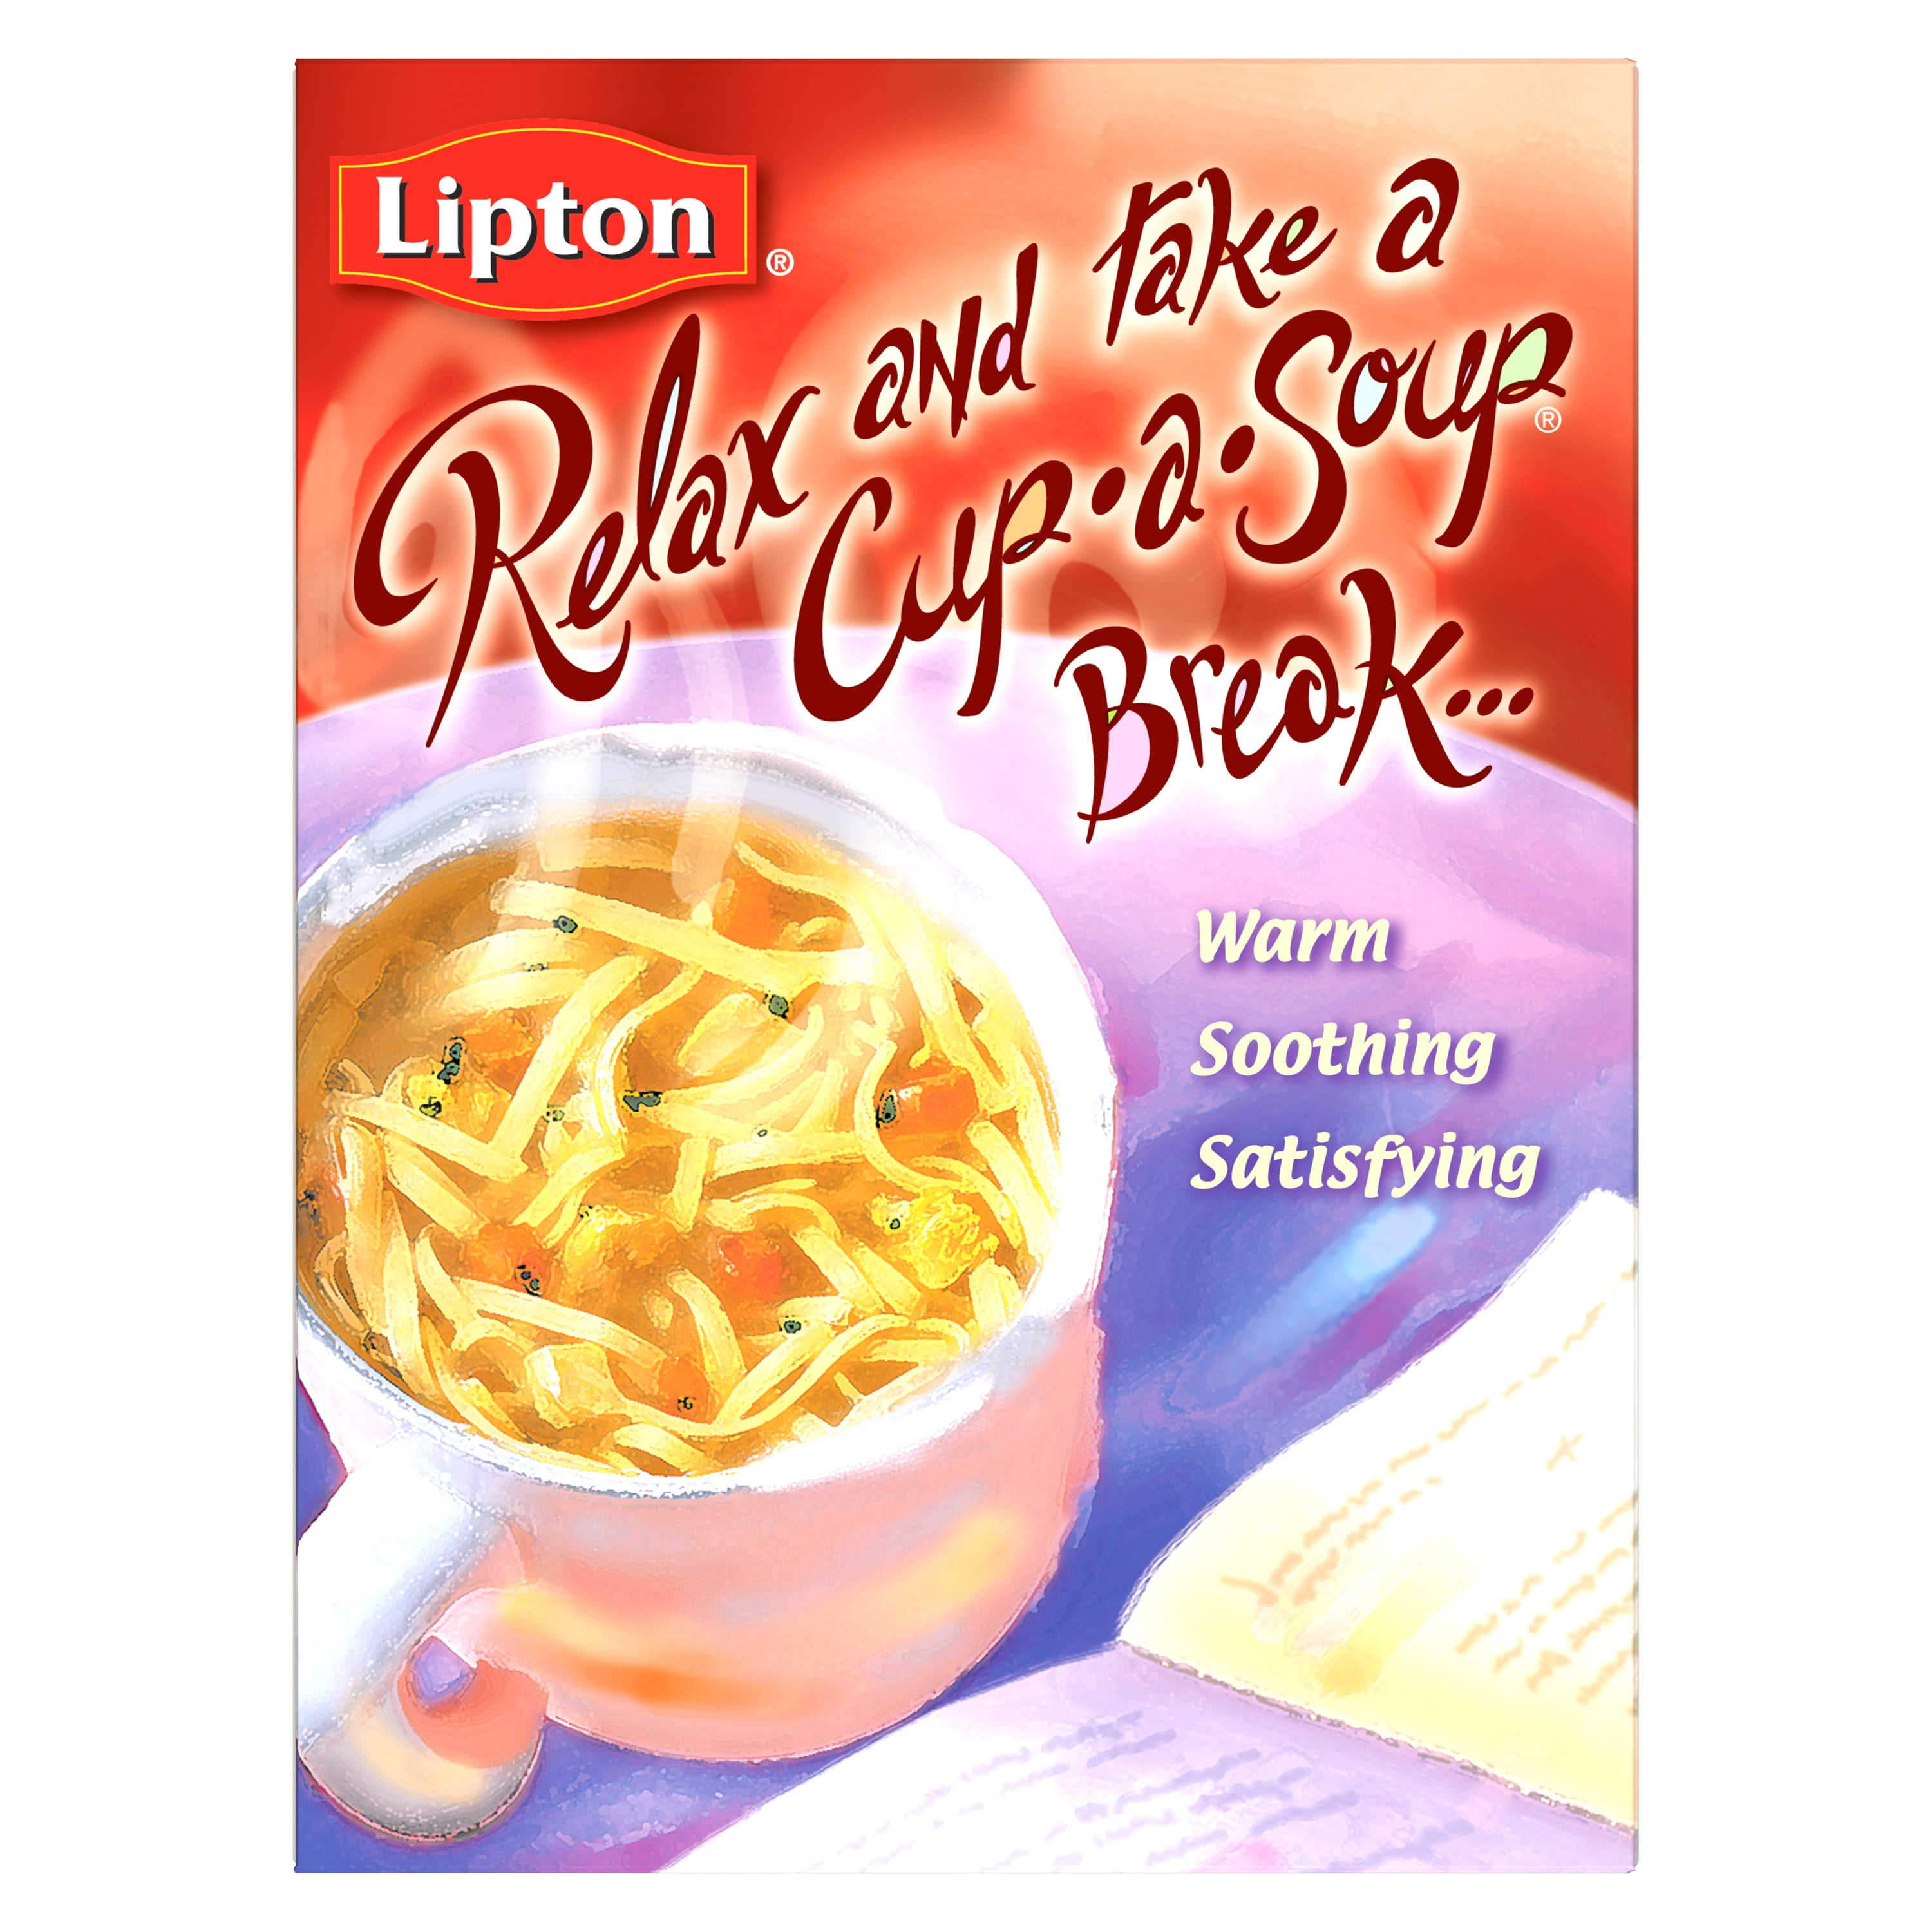 Chicken Noodle Lipton Cup-a-Soup Instant Soup Mix